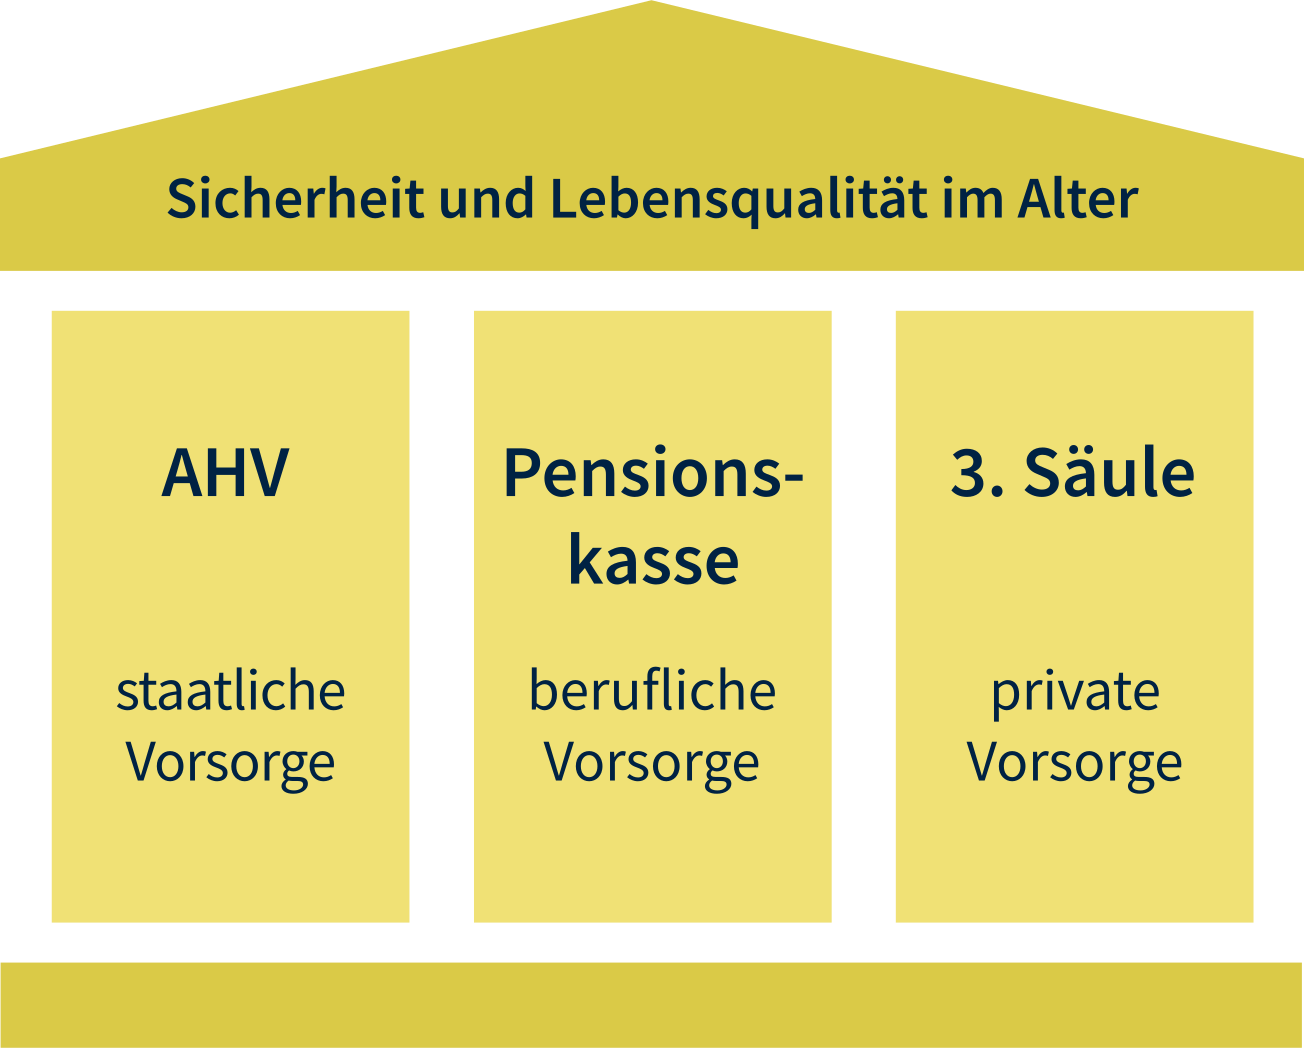 In der Schweiz besteht die Altersvorsorge aus drei Säulen. 